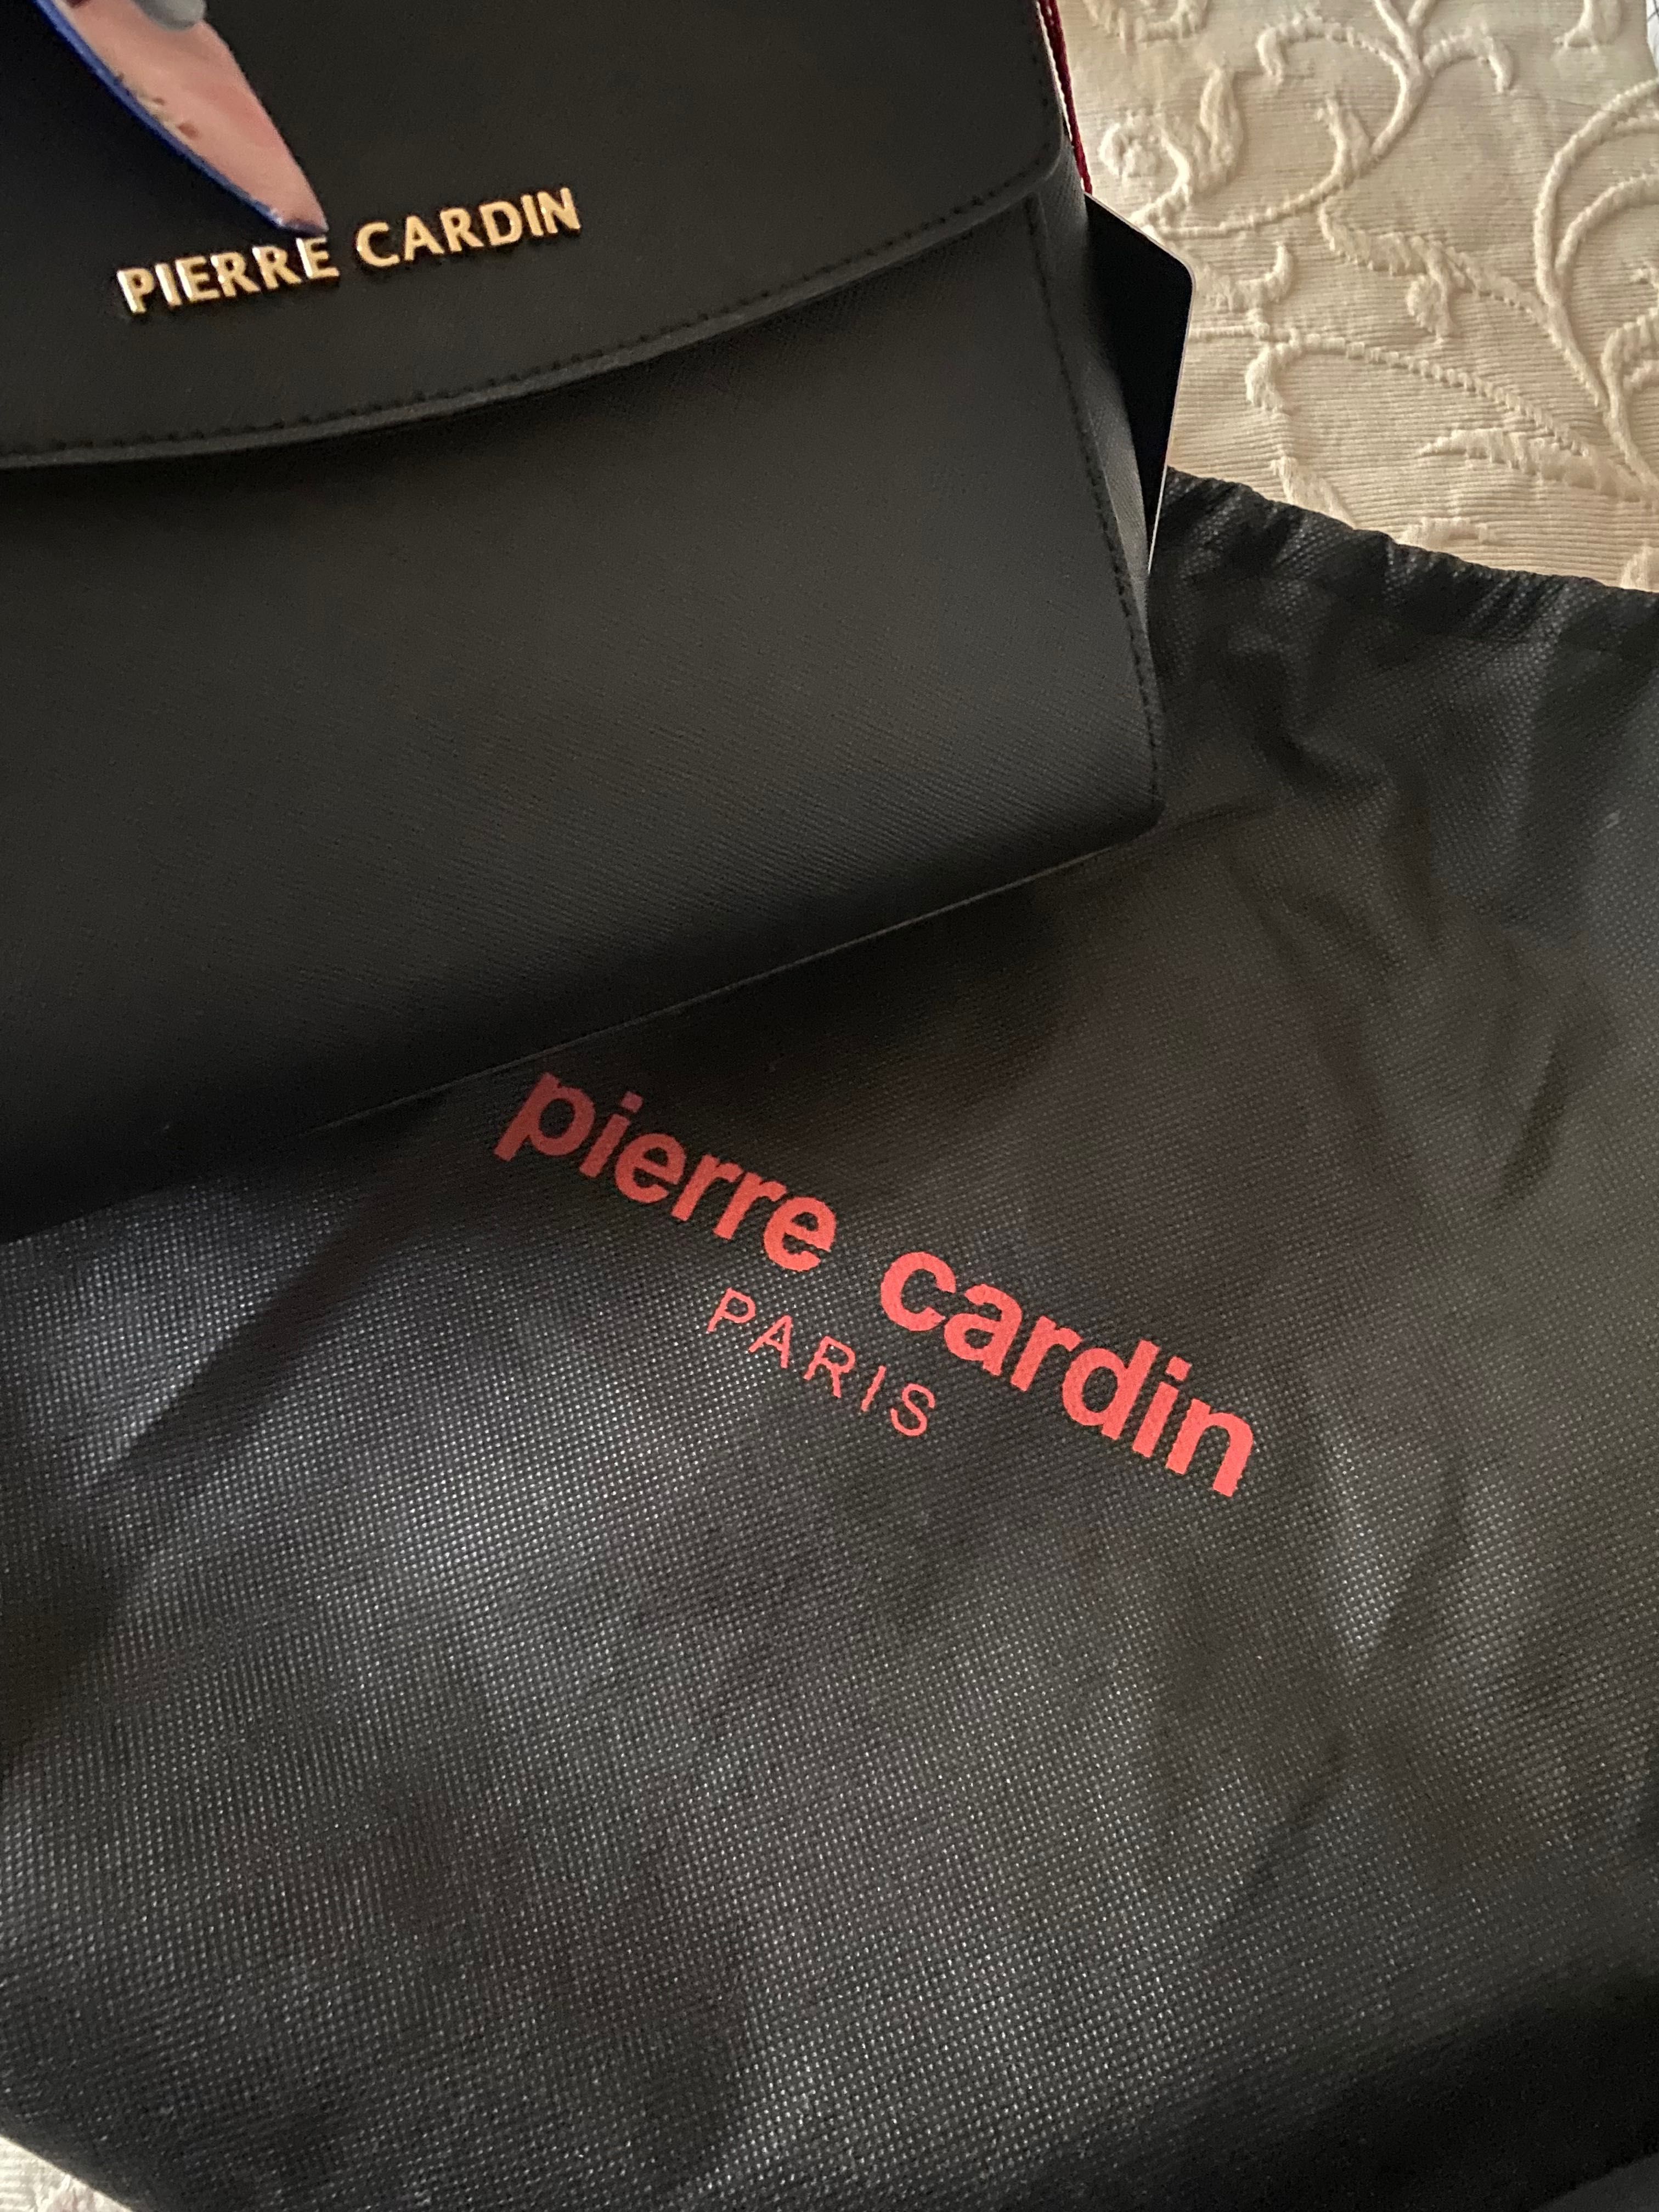 Женская сумка, Pierre Cardin